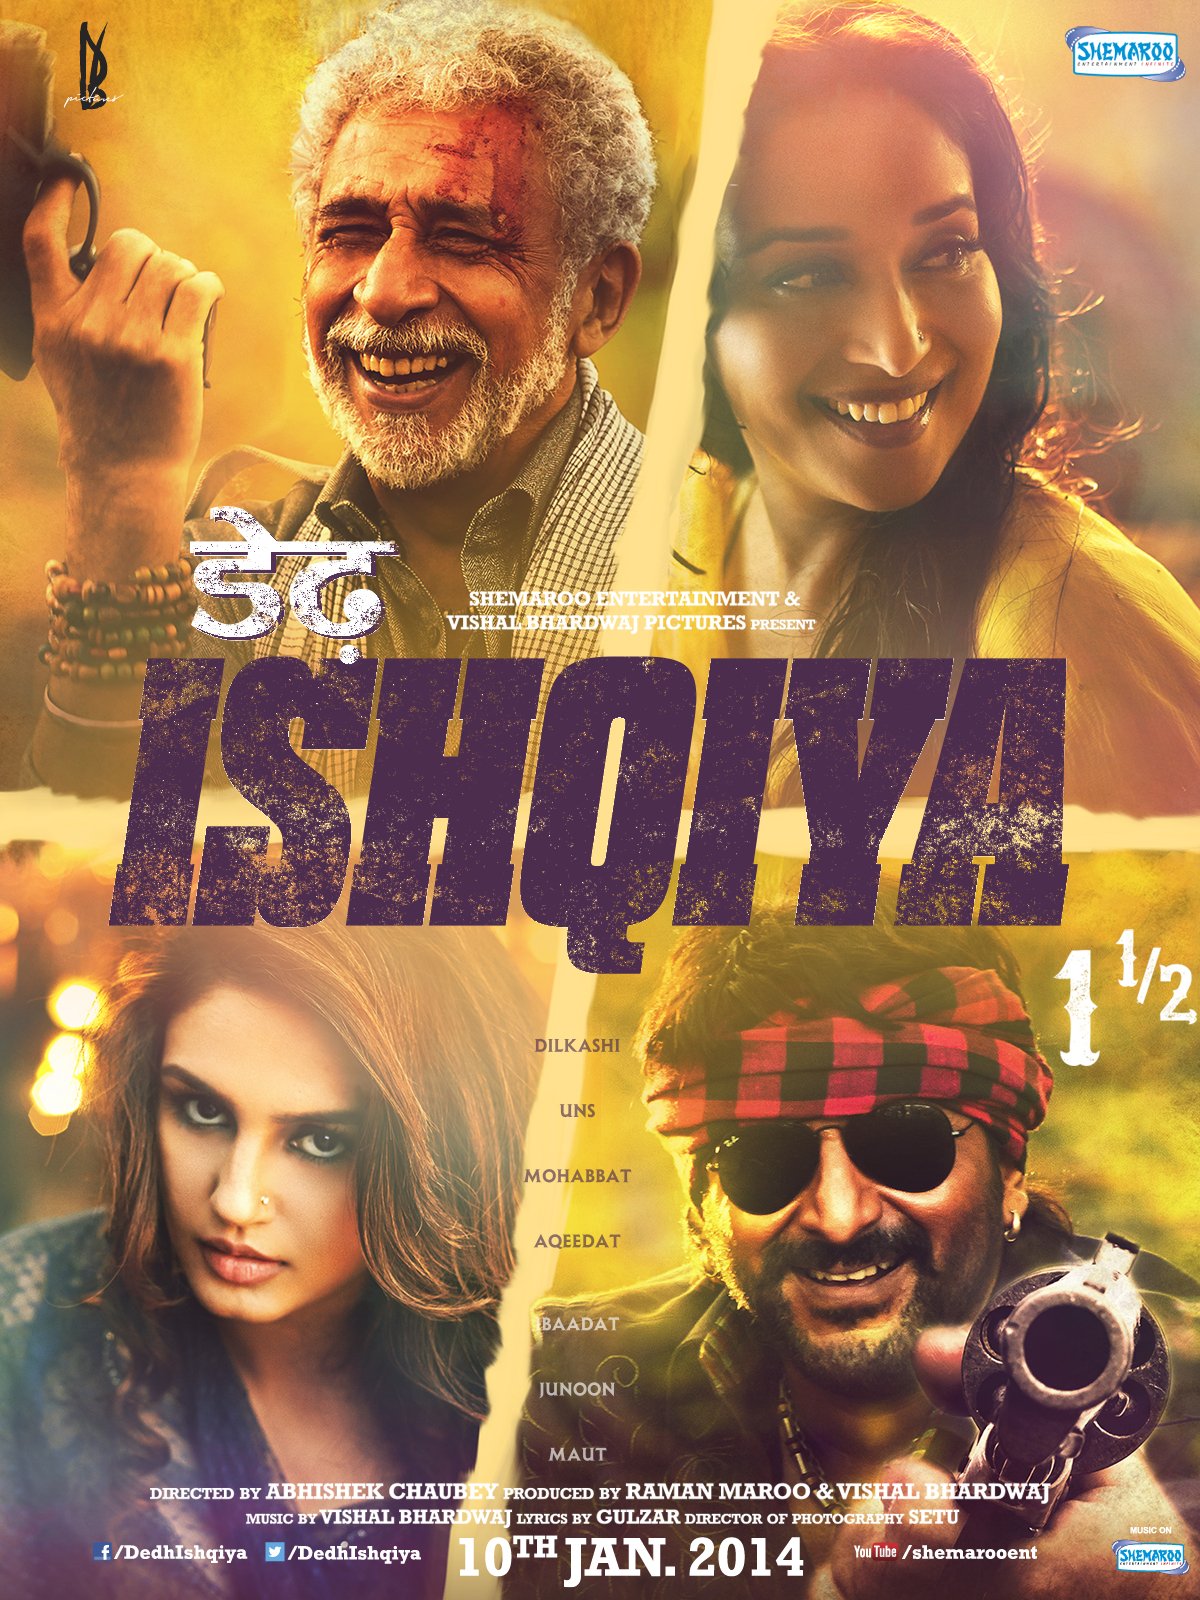 Hindi poster of the movie Dedh Ishqiya